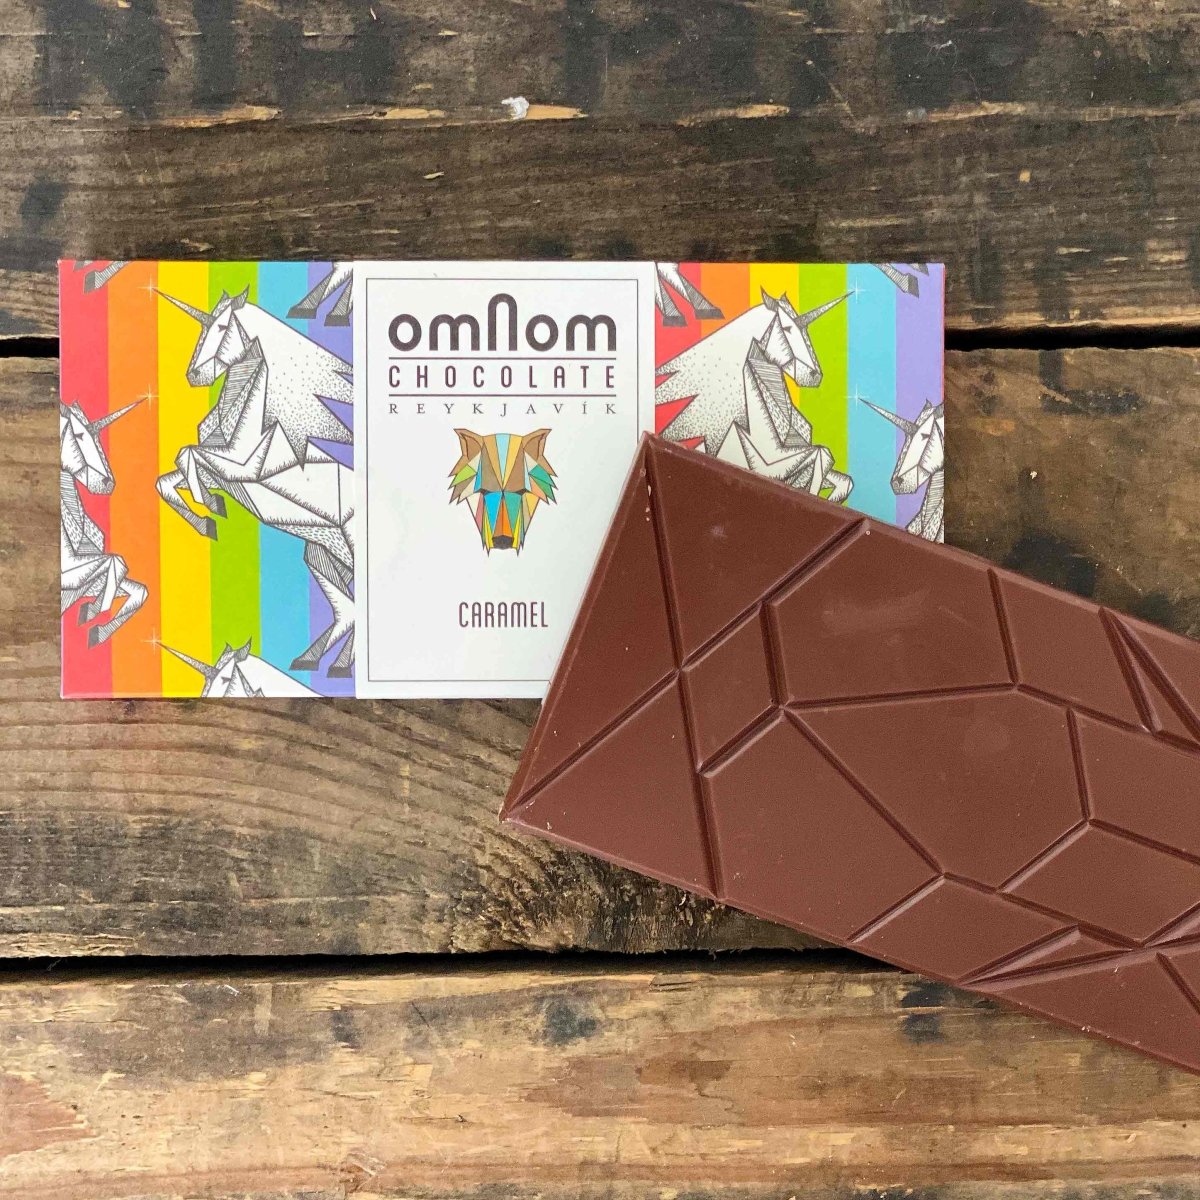 OMNOM Schokolade - Vollmilch Karamell - Ankerherz Verlag